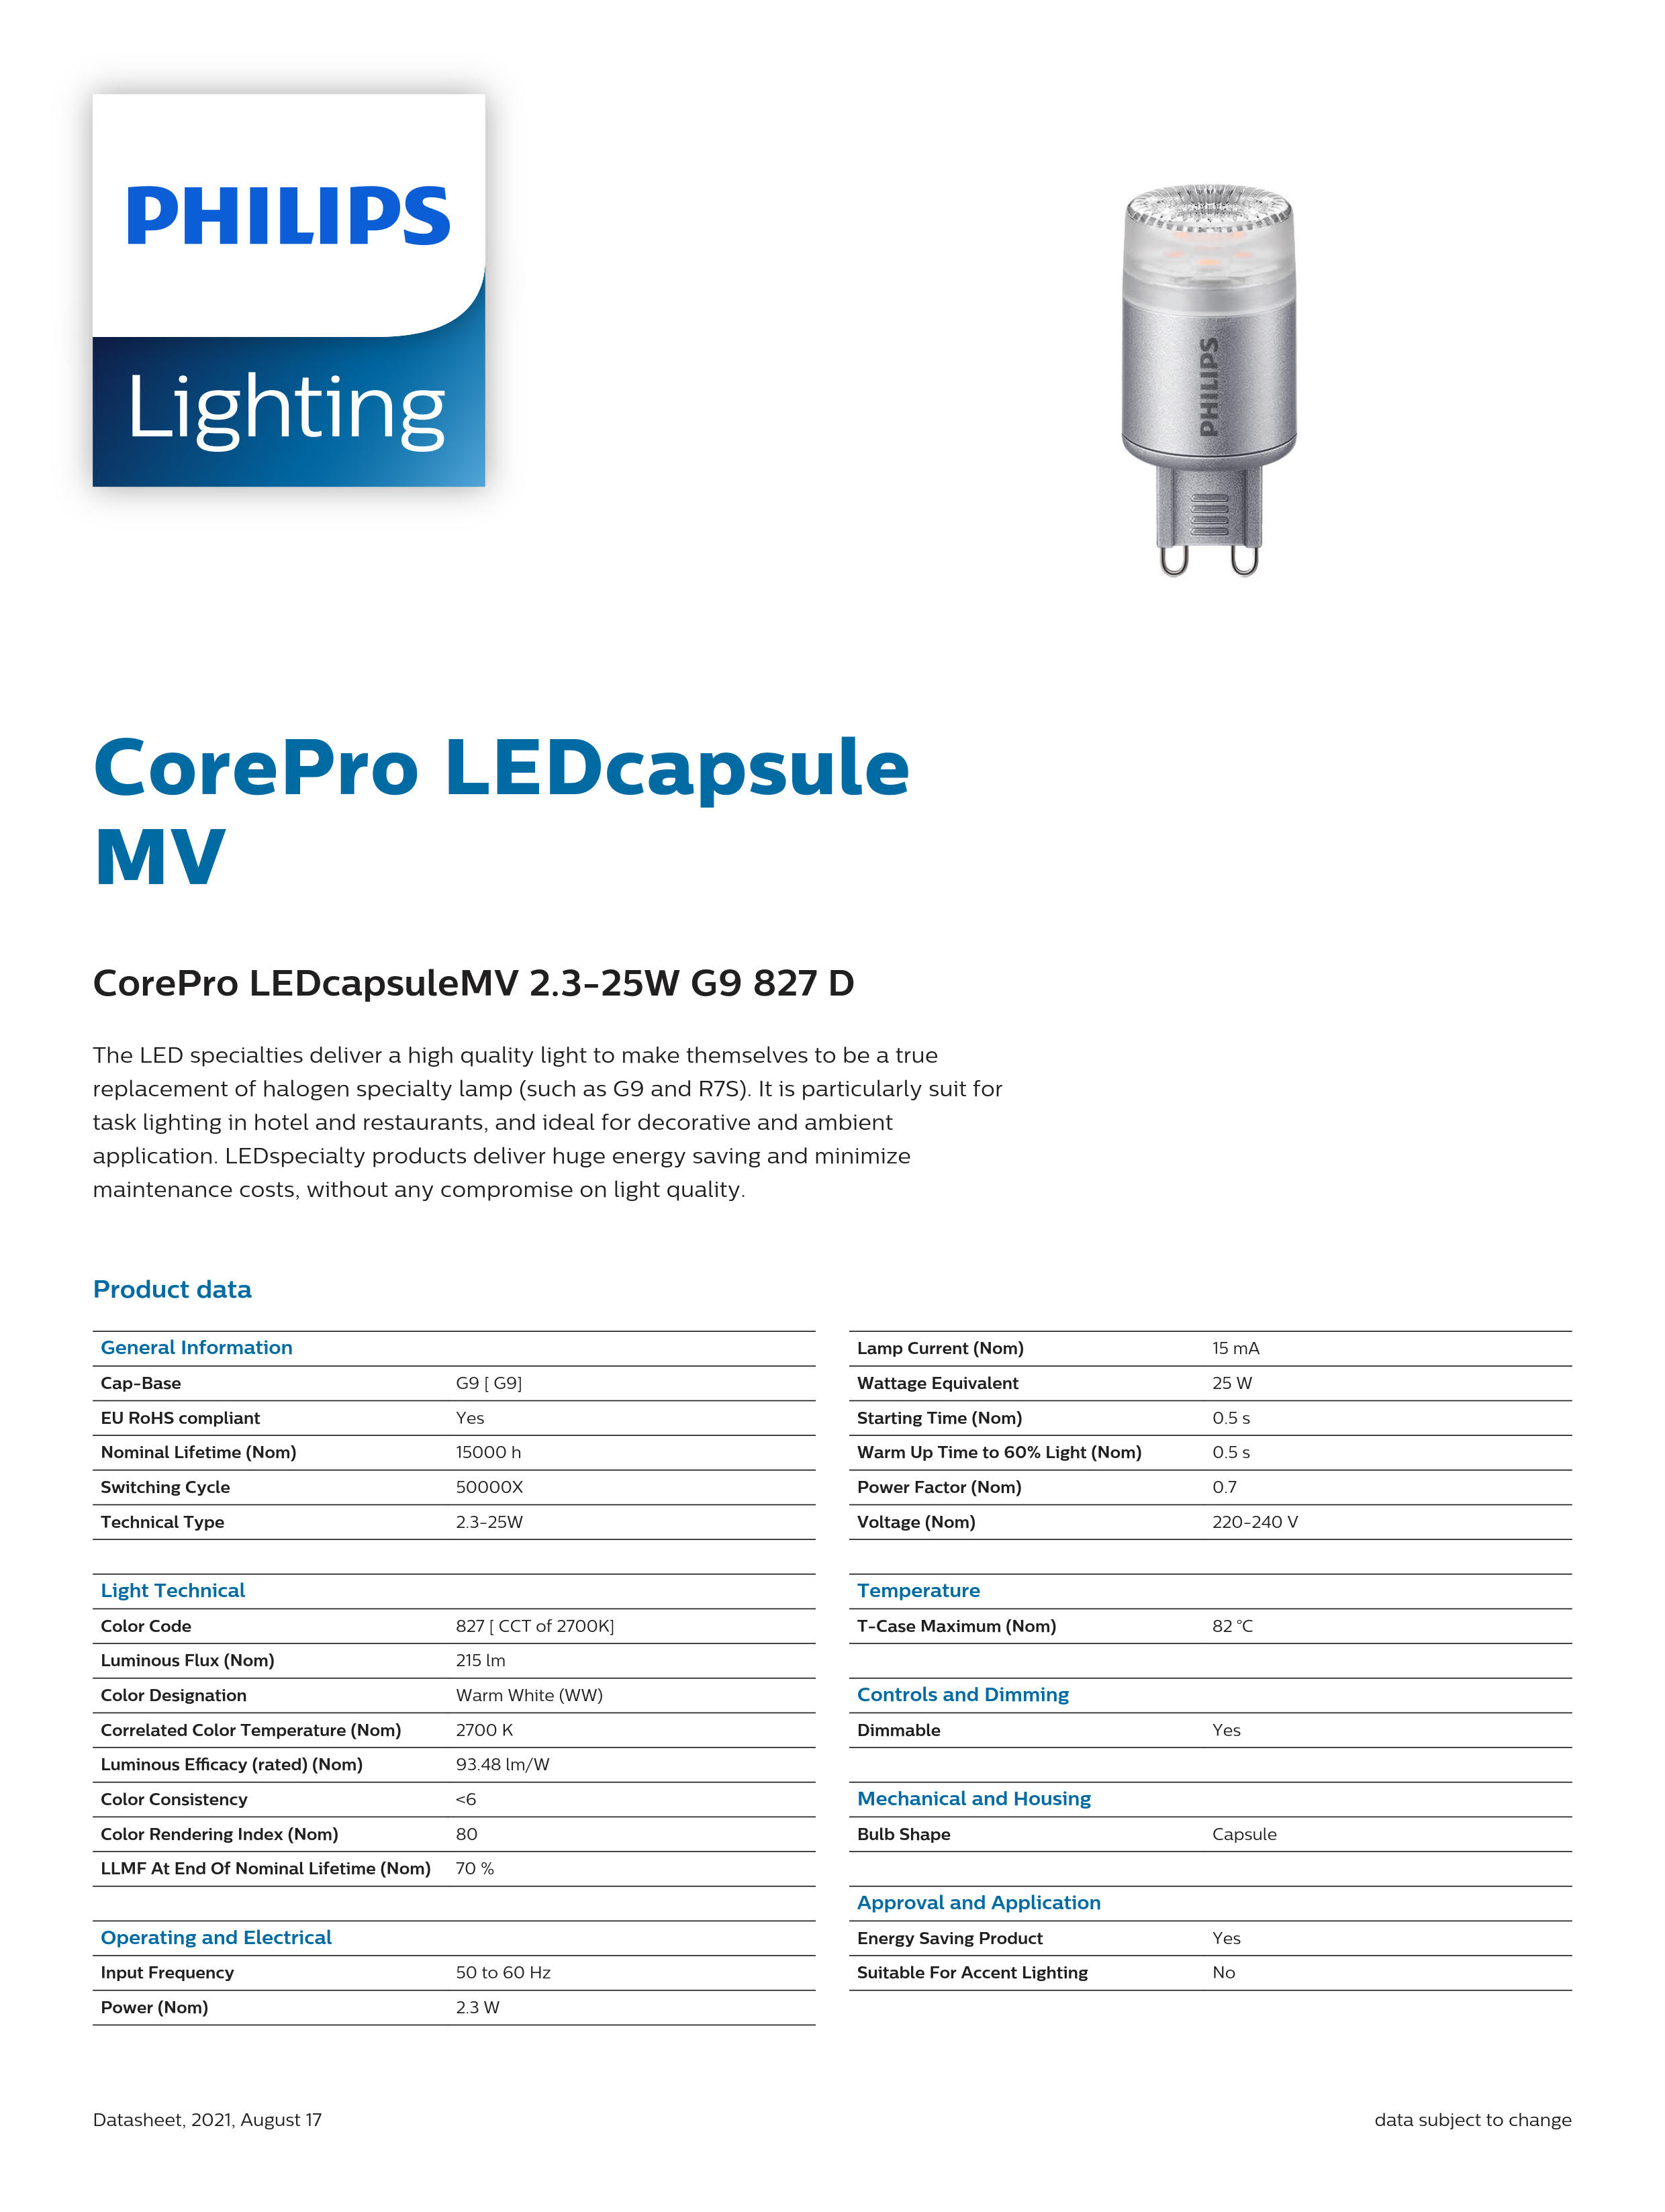 PHILIPS CorePro LEDcapsuleMV 2.3-25W G9 827 D 929001232002